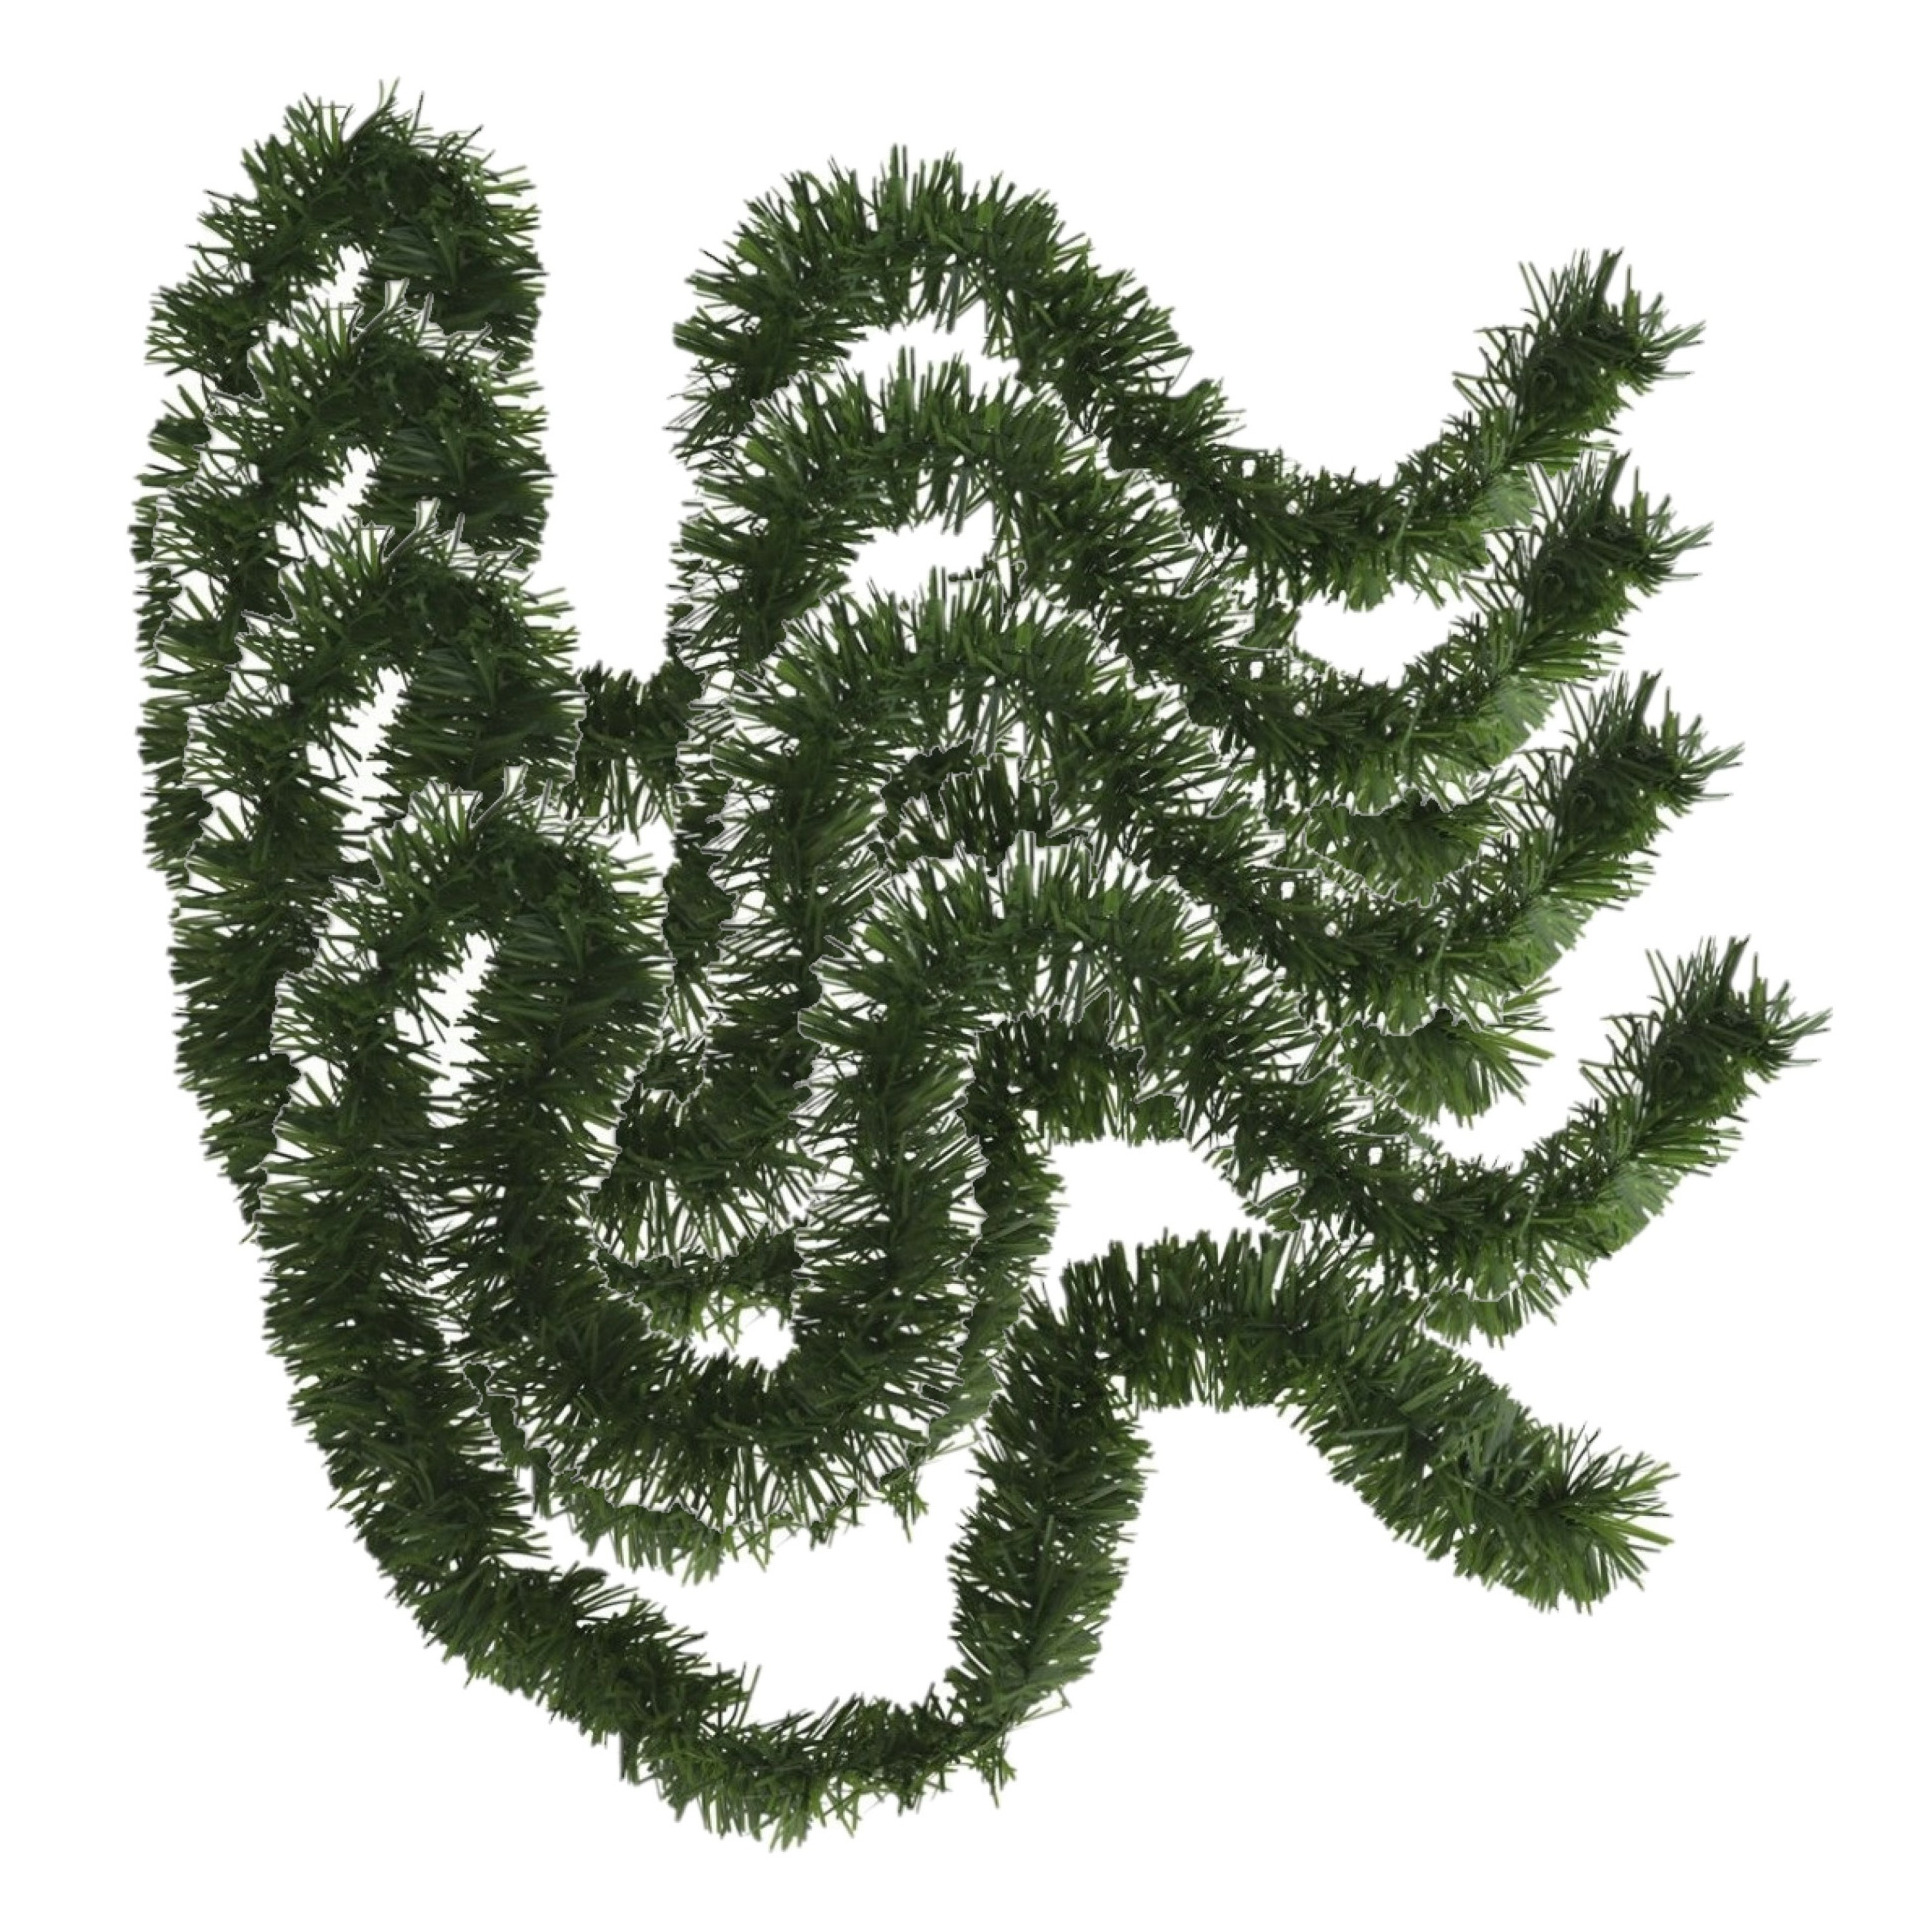 4x stuks kerstboom folie slingers-lametta guirlandes van 180 x 7 cm in de kleur glitter groen